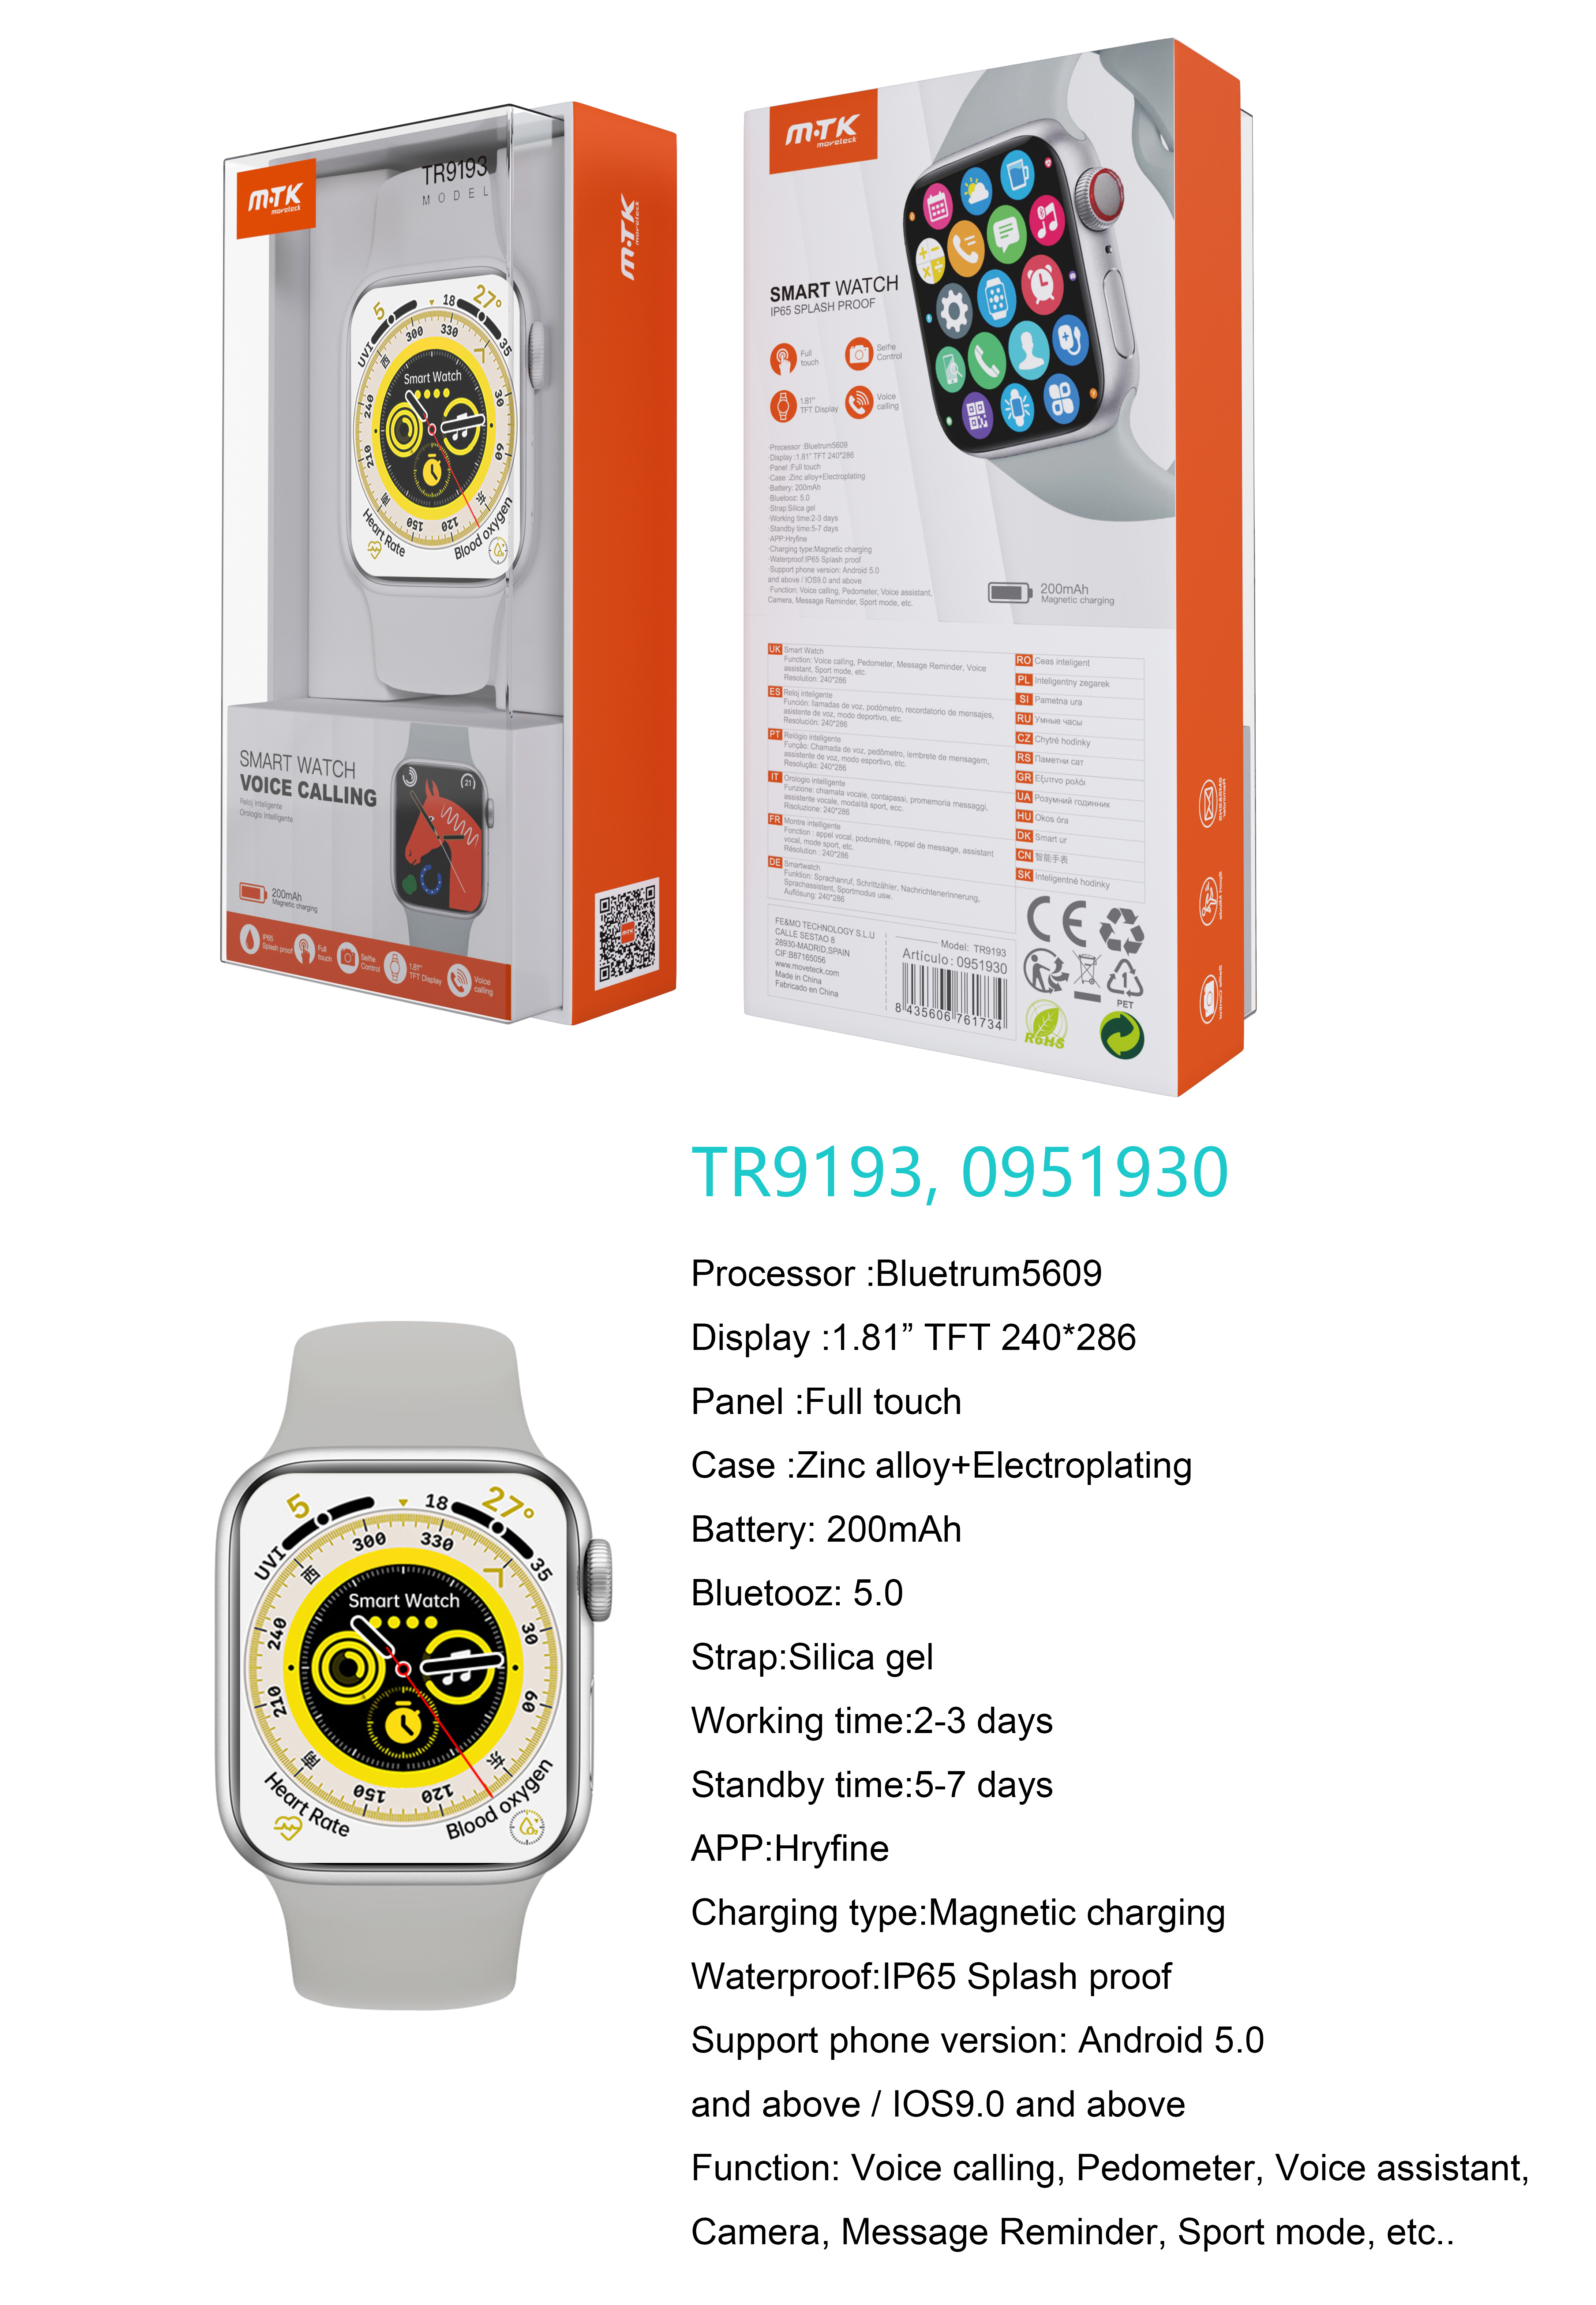 TR9193  BL Reloj Inteligente con bluetooth 5.0, Pantalla tactil de 1.81 pulgadas, Soporta llemadas, Asistente de Voz,Impermeable IP65, Bateria 200mAh,